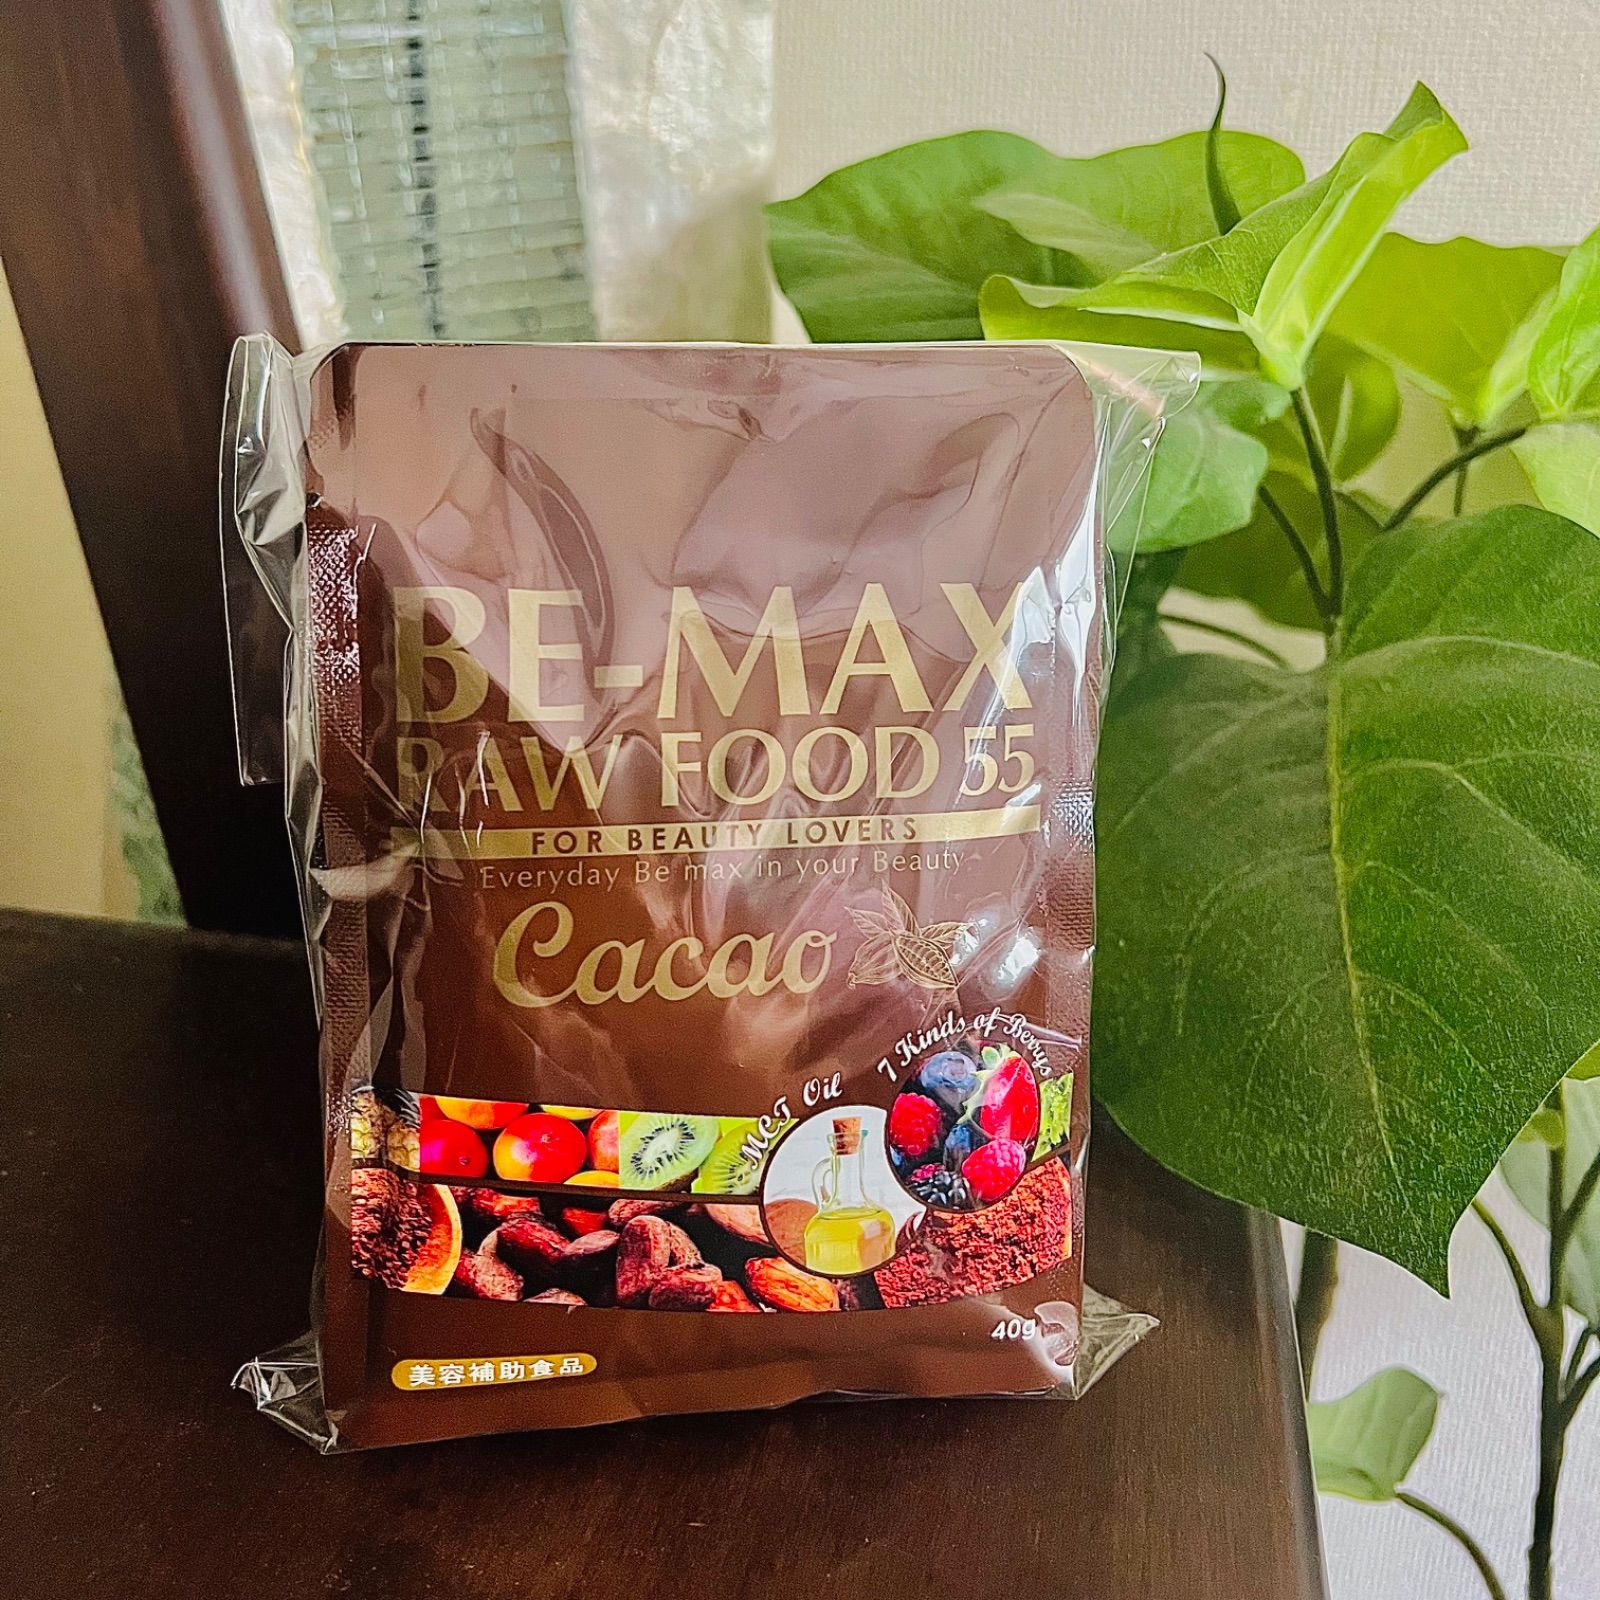 5☆好評 bemax cacao raw food 60 ココア ココア飲料 thebrazilian.co.uk